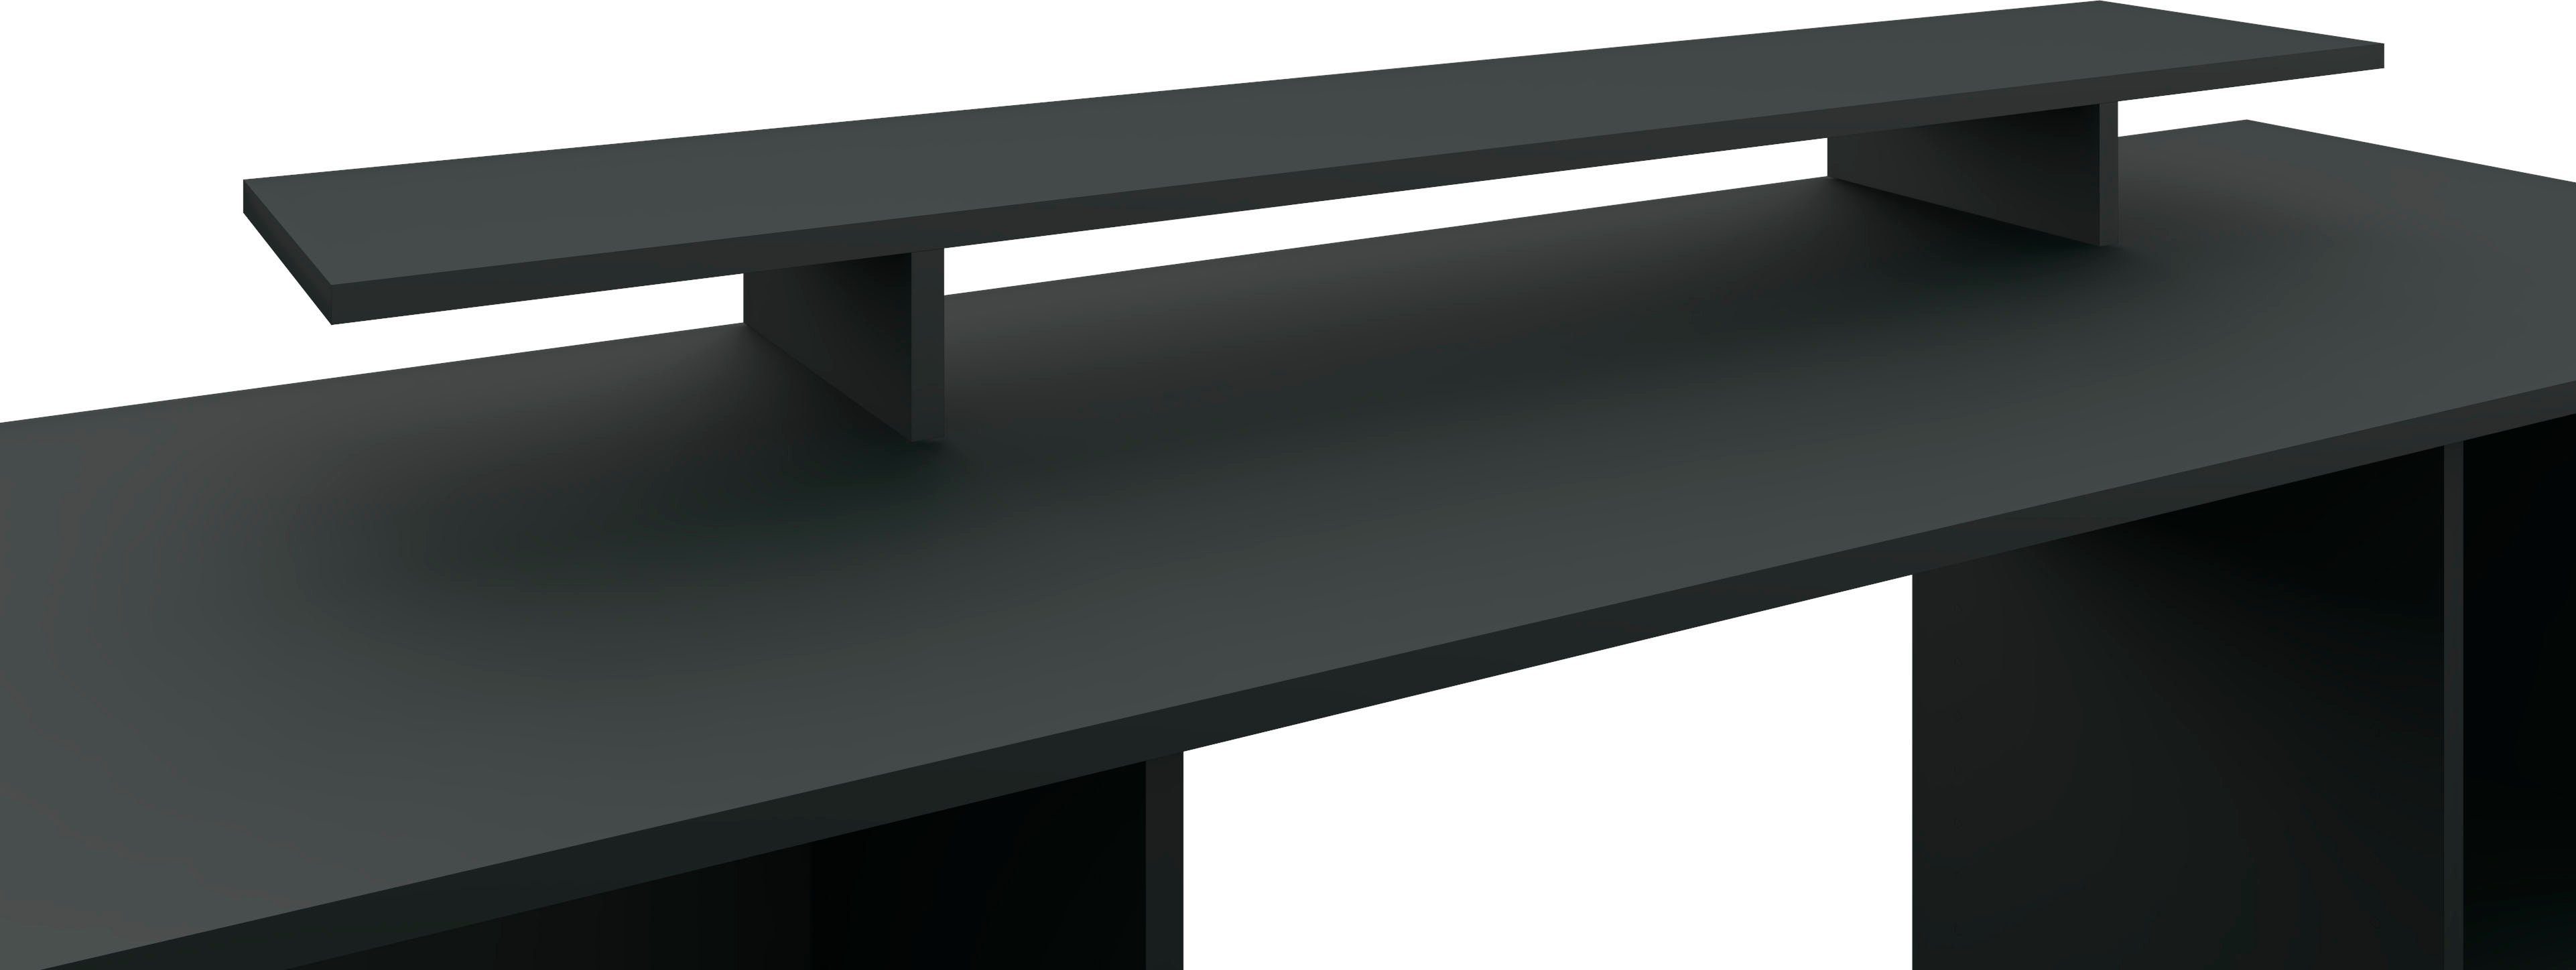 borchardt Möbel Schreibtischaufsatz Kai, Monitorständer, Germany schwarz-matt modernen Bildschirmerhöhung im Made Design, in